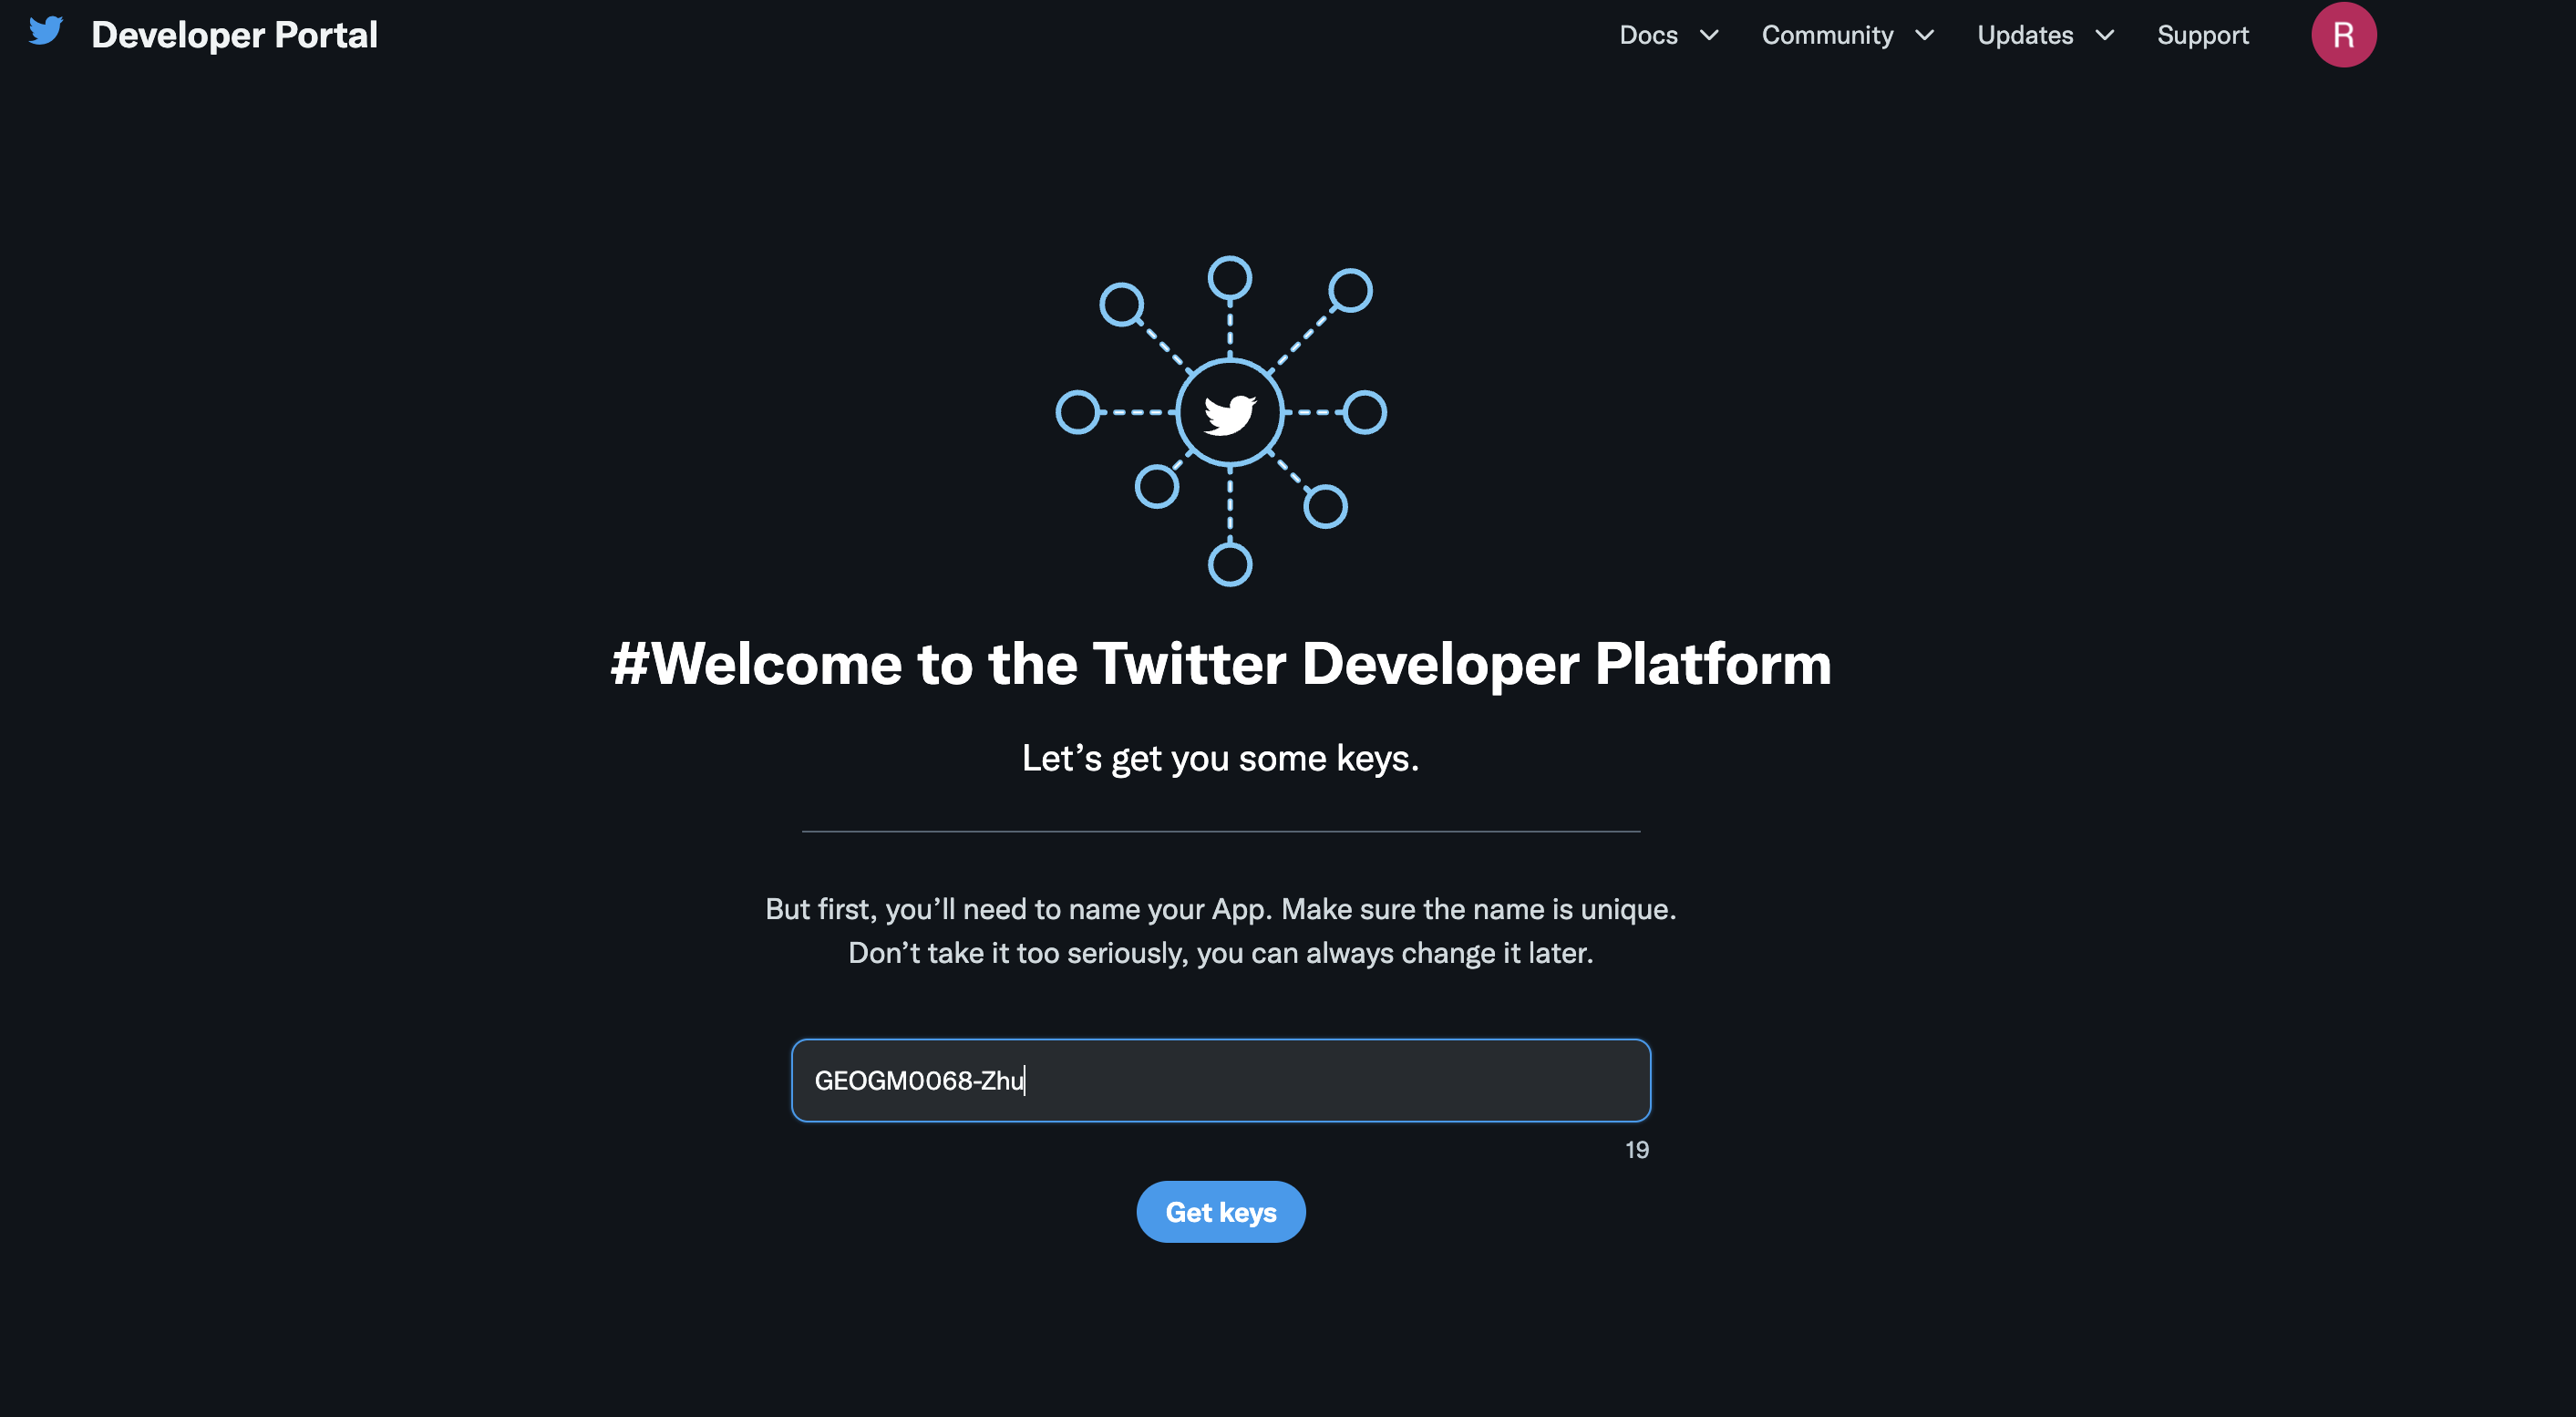 Get Keys from Twitter Developer